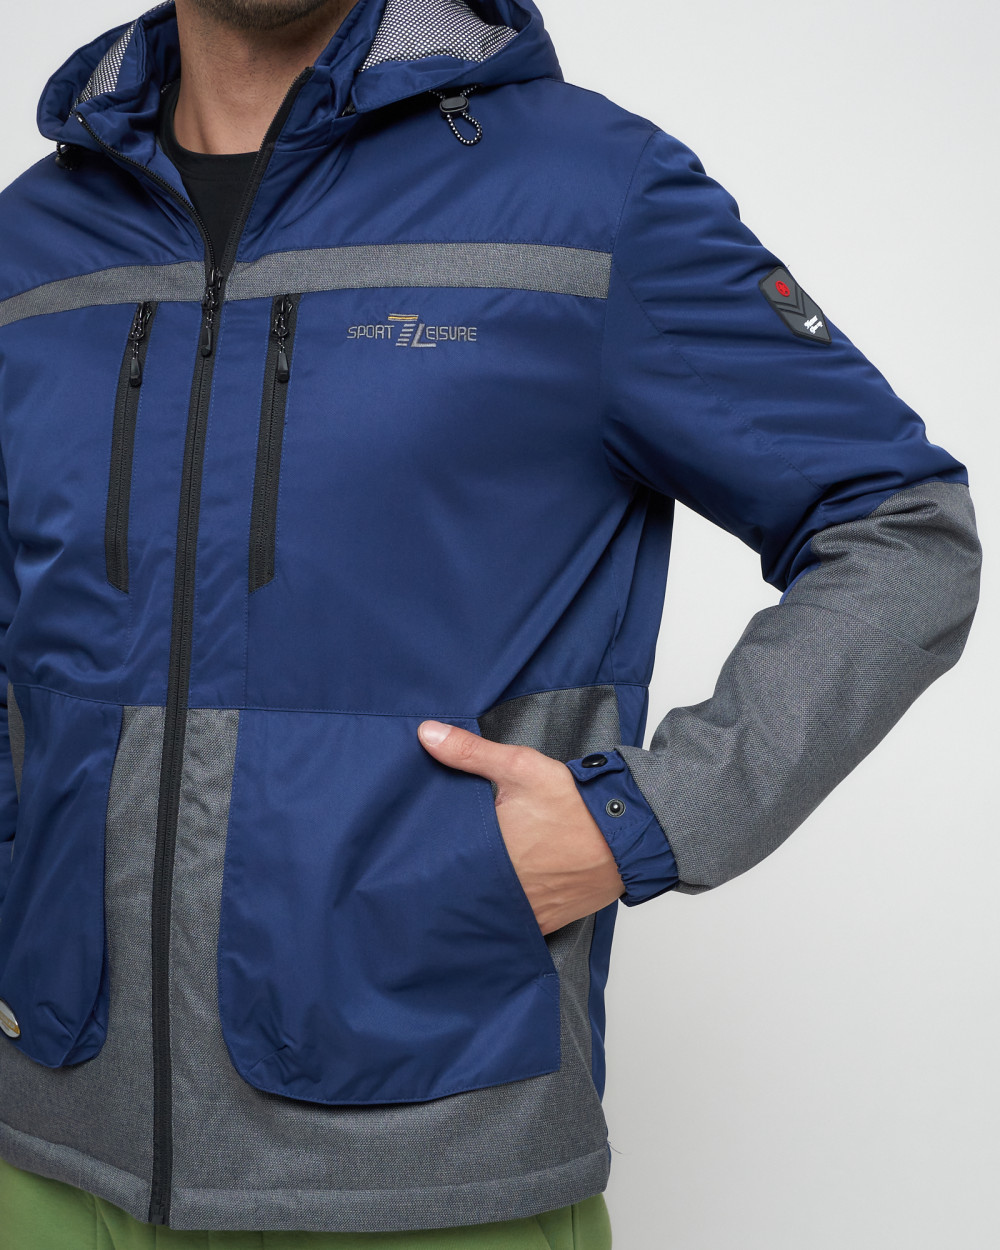 Купить куртку мужскую спортивную весеннюю оптом от производителя недорого в Москве 8815TS 1